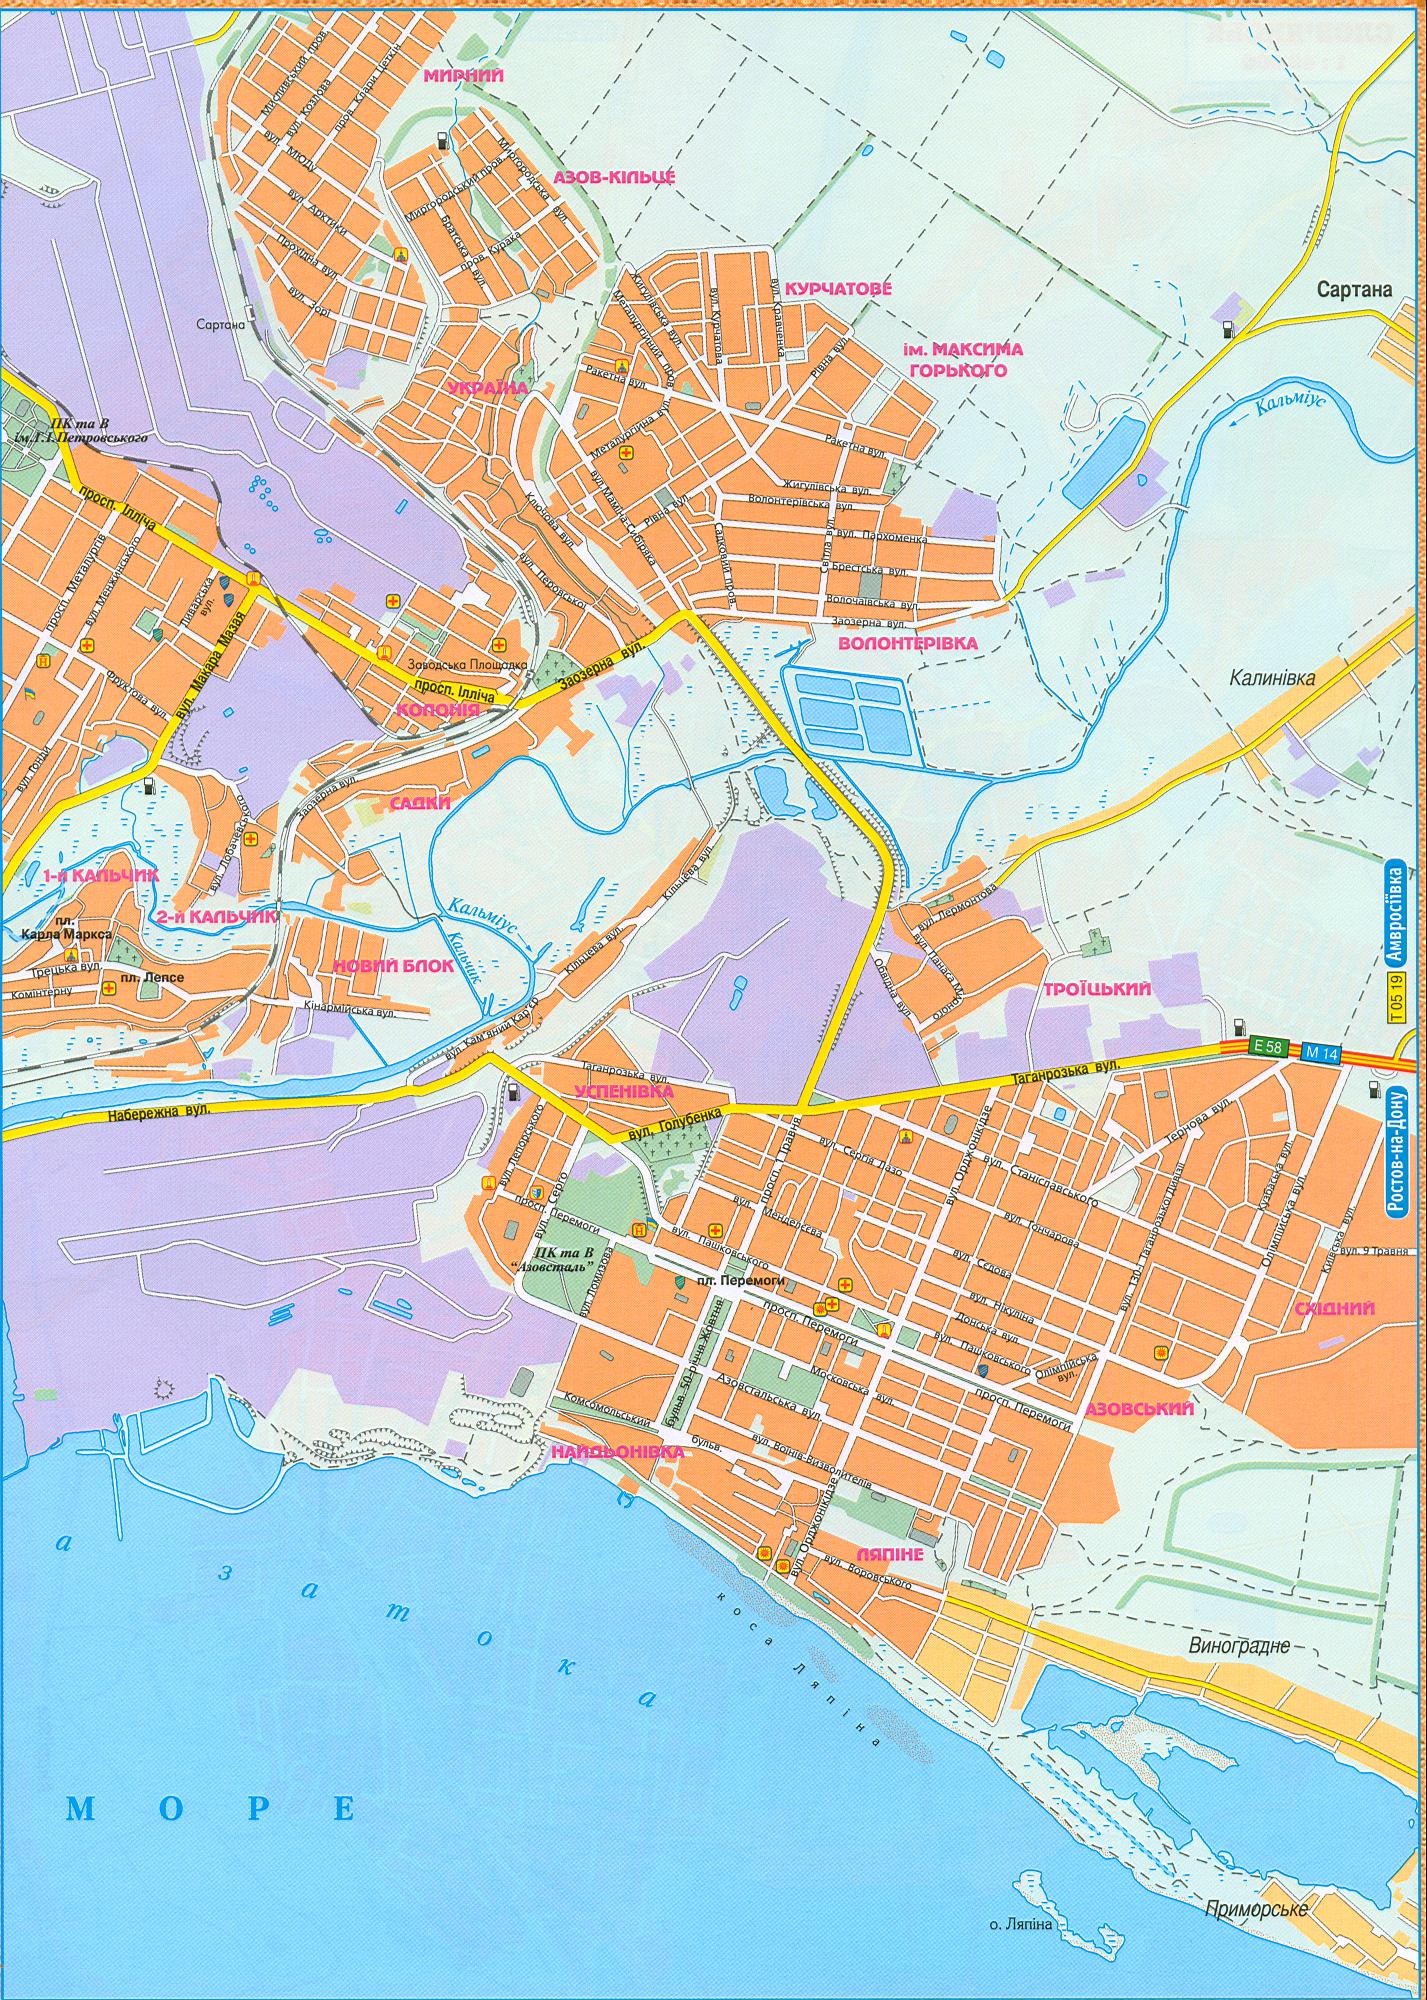 Карта Маріуполя нова 2008 року. Місто Маріуполь Донецької області, масштаб 1см: 500м, B0